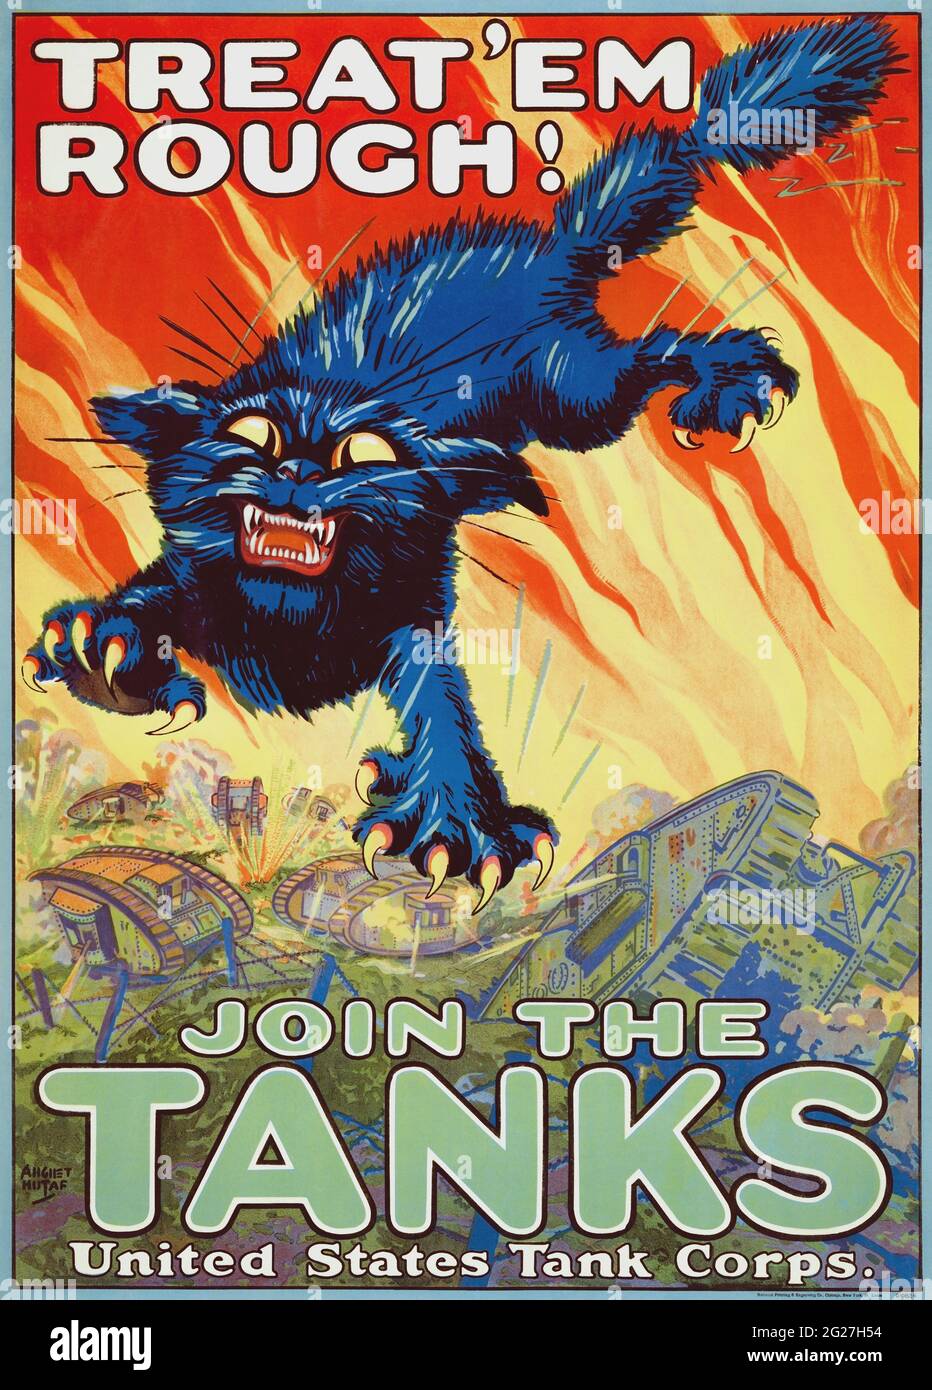 Ein Poster zur Rekrutierung des Panzerkorps 1917, auf dem eine springende Figur einer schwarzen Katze mit ihren Krallen abgebildet ist. Stockfoto